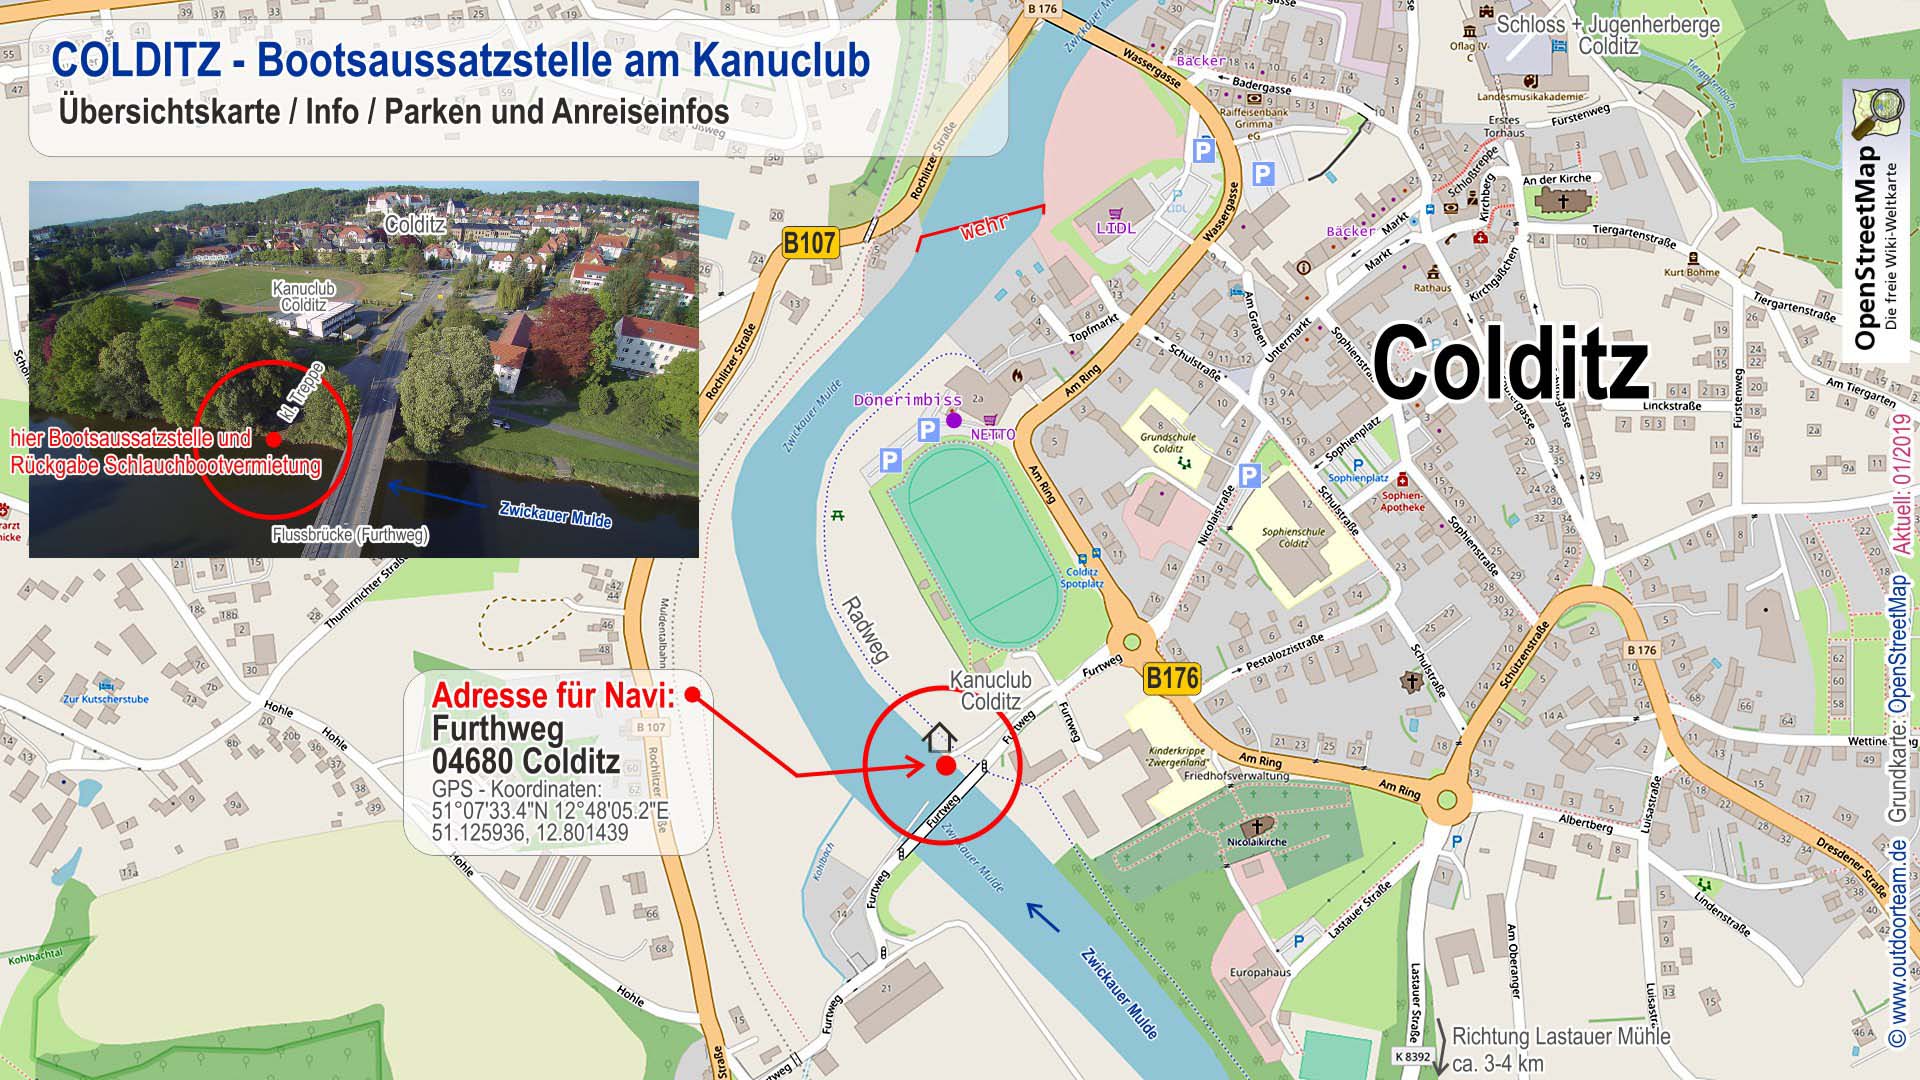 Schlauchbootvermietung Detailkarte Colditz Tourende Lange Strecke "F" auf der Zwickauer Mulde